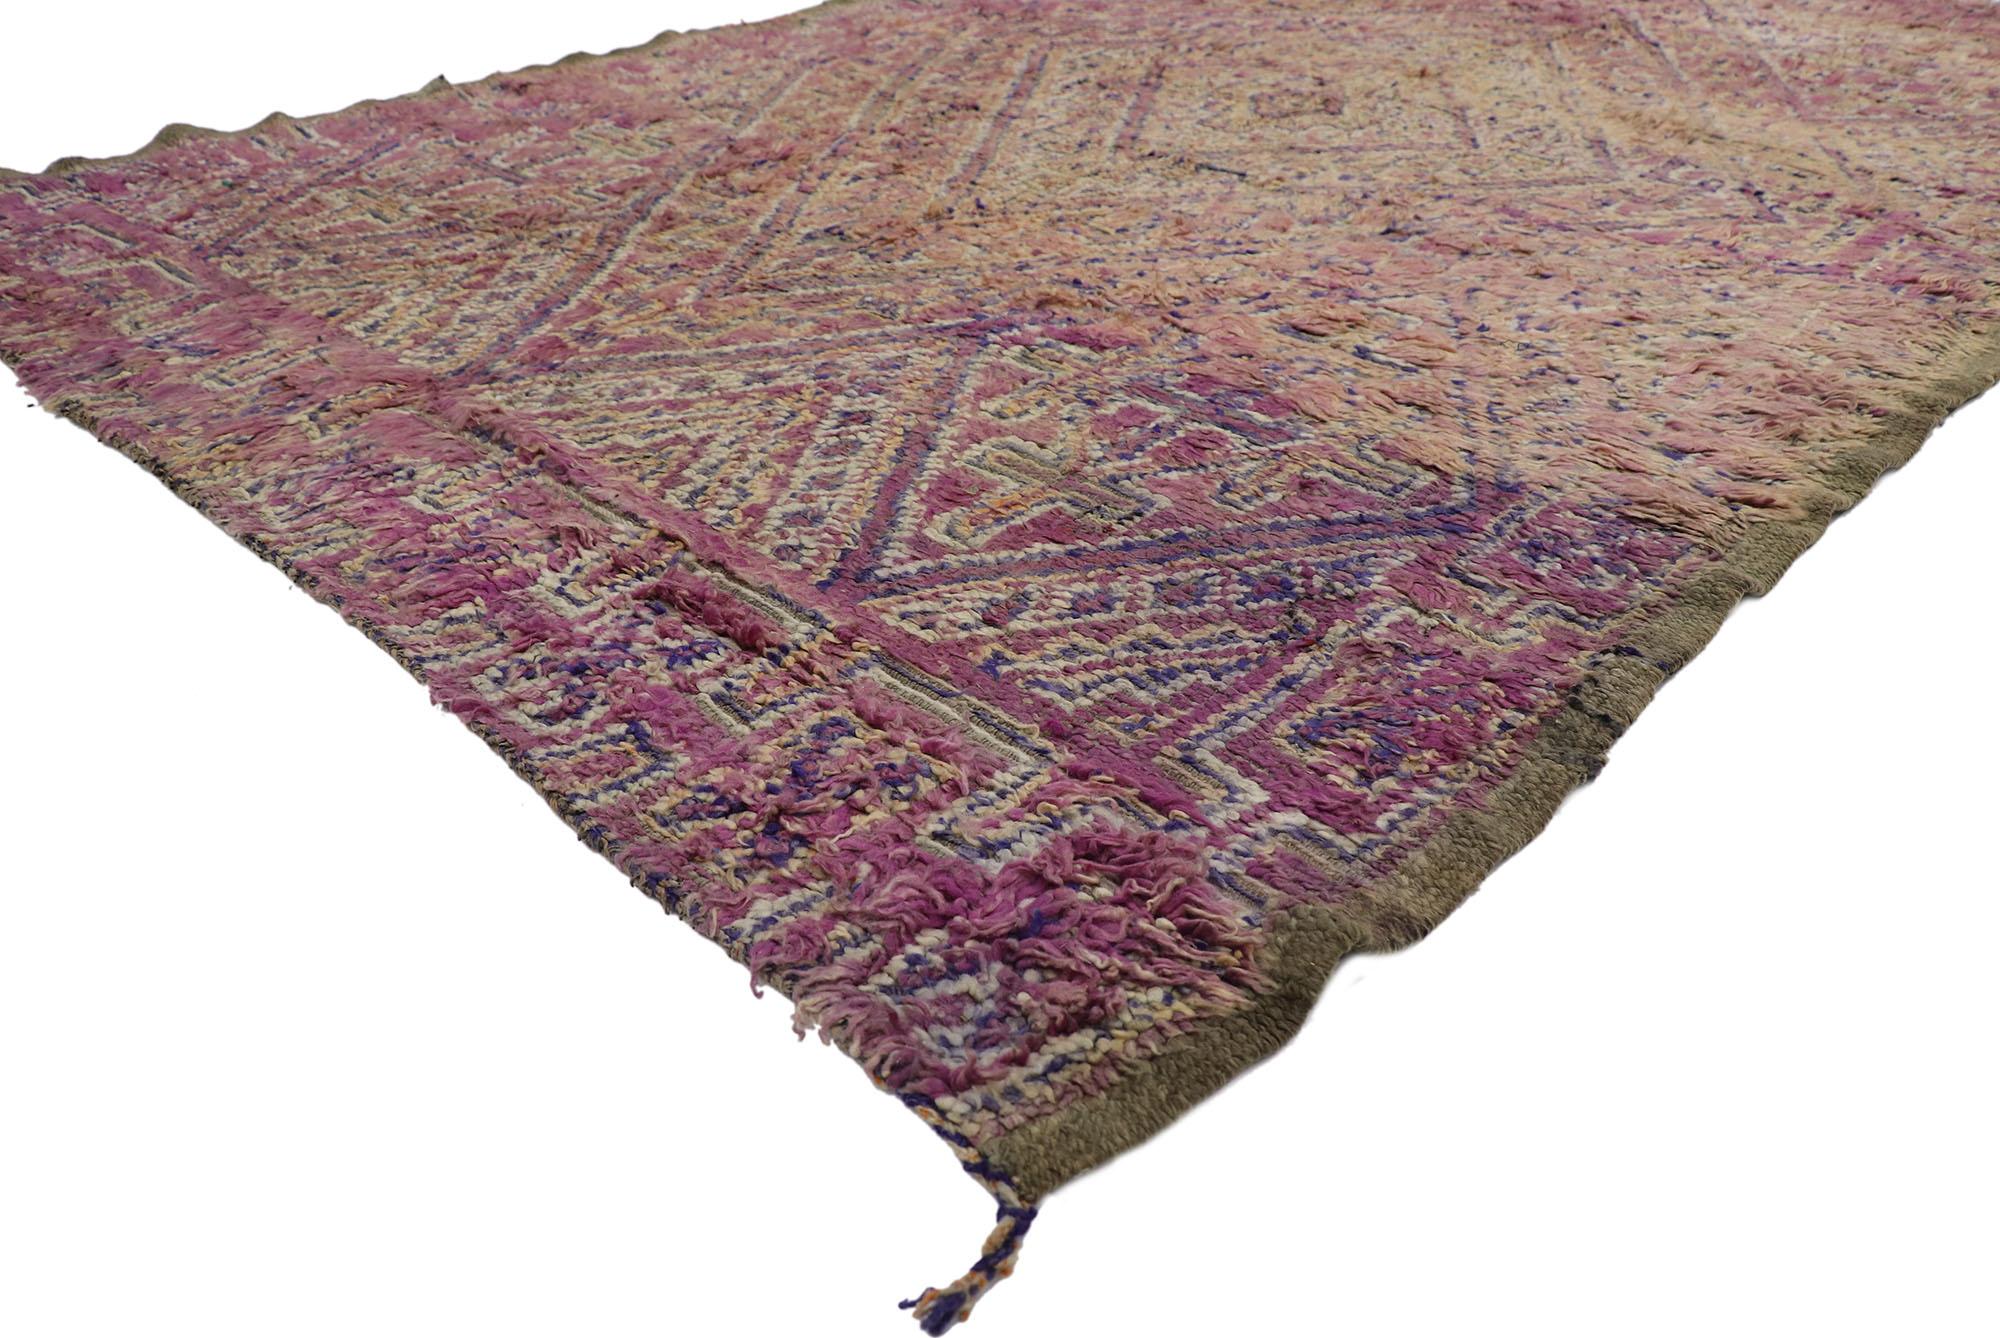 21435 Vintage Beni MGuild Marokkanischer Teppich, 06'01 x 09'10.
Boho-Luxus trifft auf Gemütlichkeit in diesem handgeknüpften marokkanischen Vintage-Teppich aus Wolle von Beni MGuild. Die unverwechselbaren Tribal-Elemente und skurrilen Farben, die